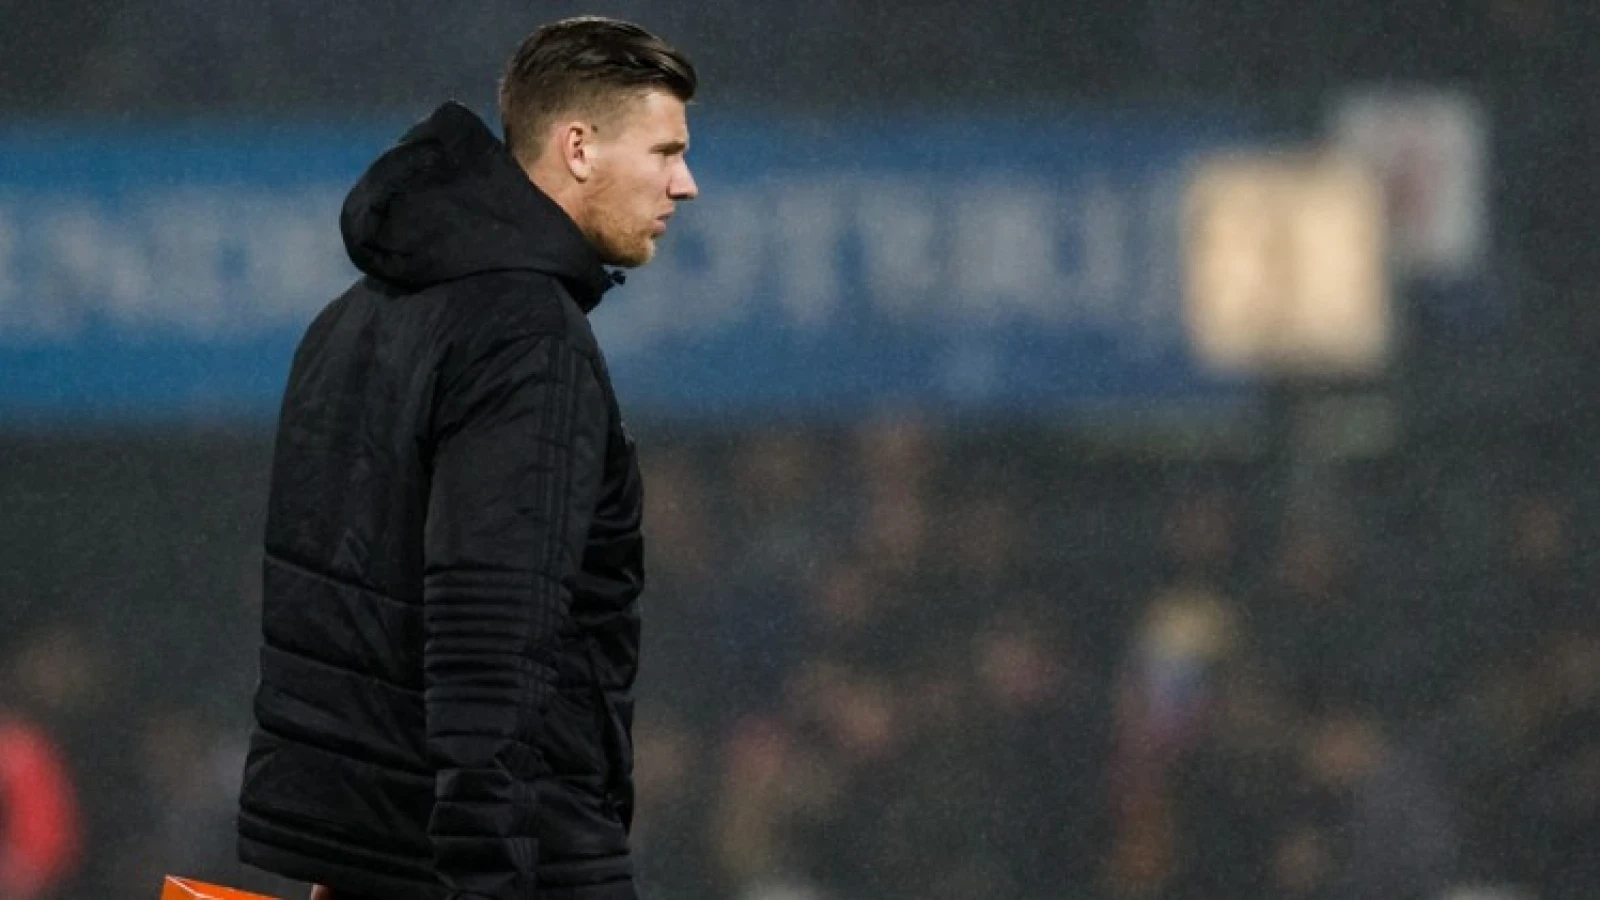 Krabbendam vernietigend: 'Dat gedrag past niet bij de topsportcultuur waar Feyenoord naar streeft'